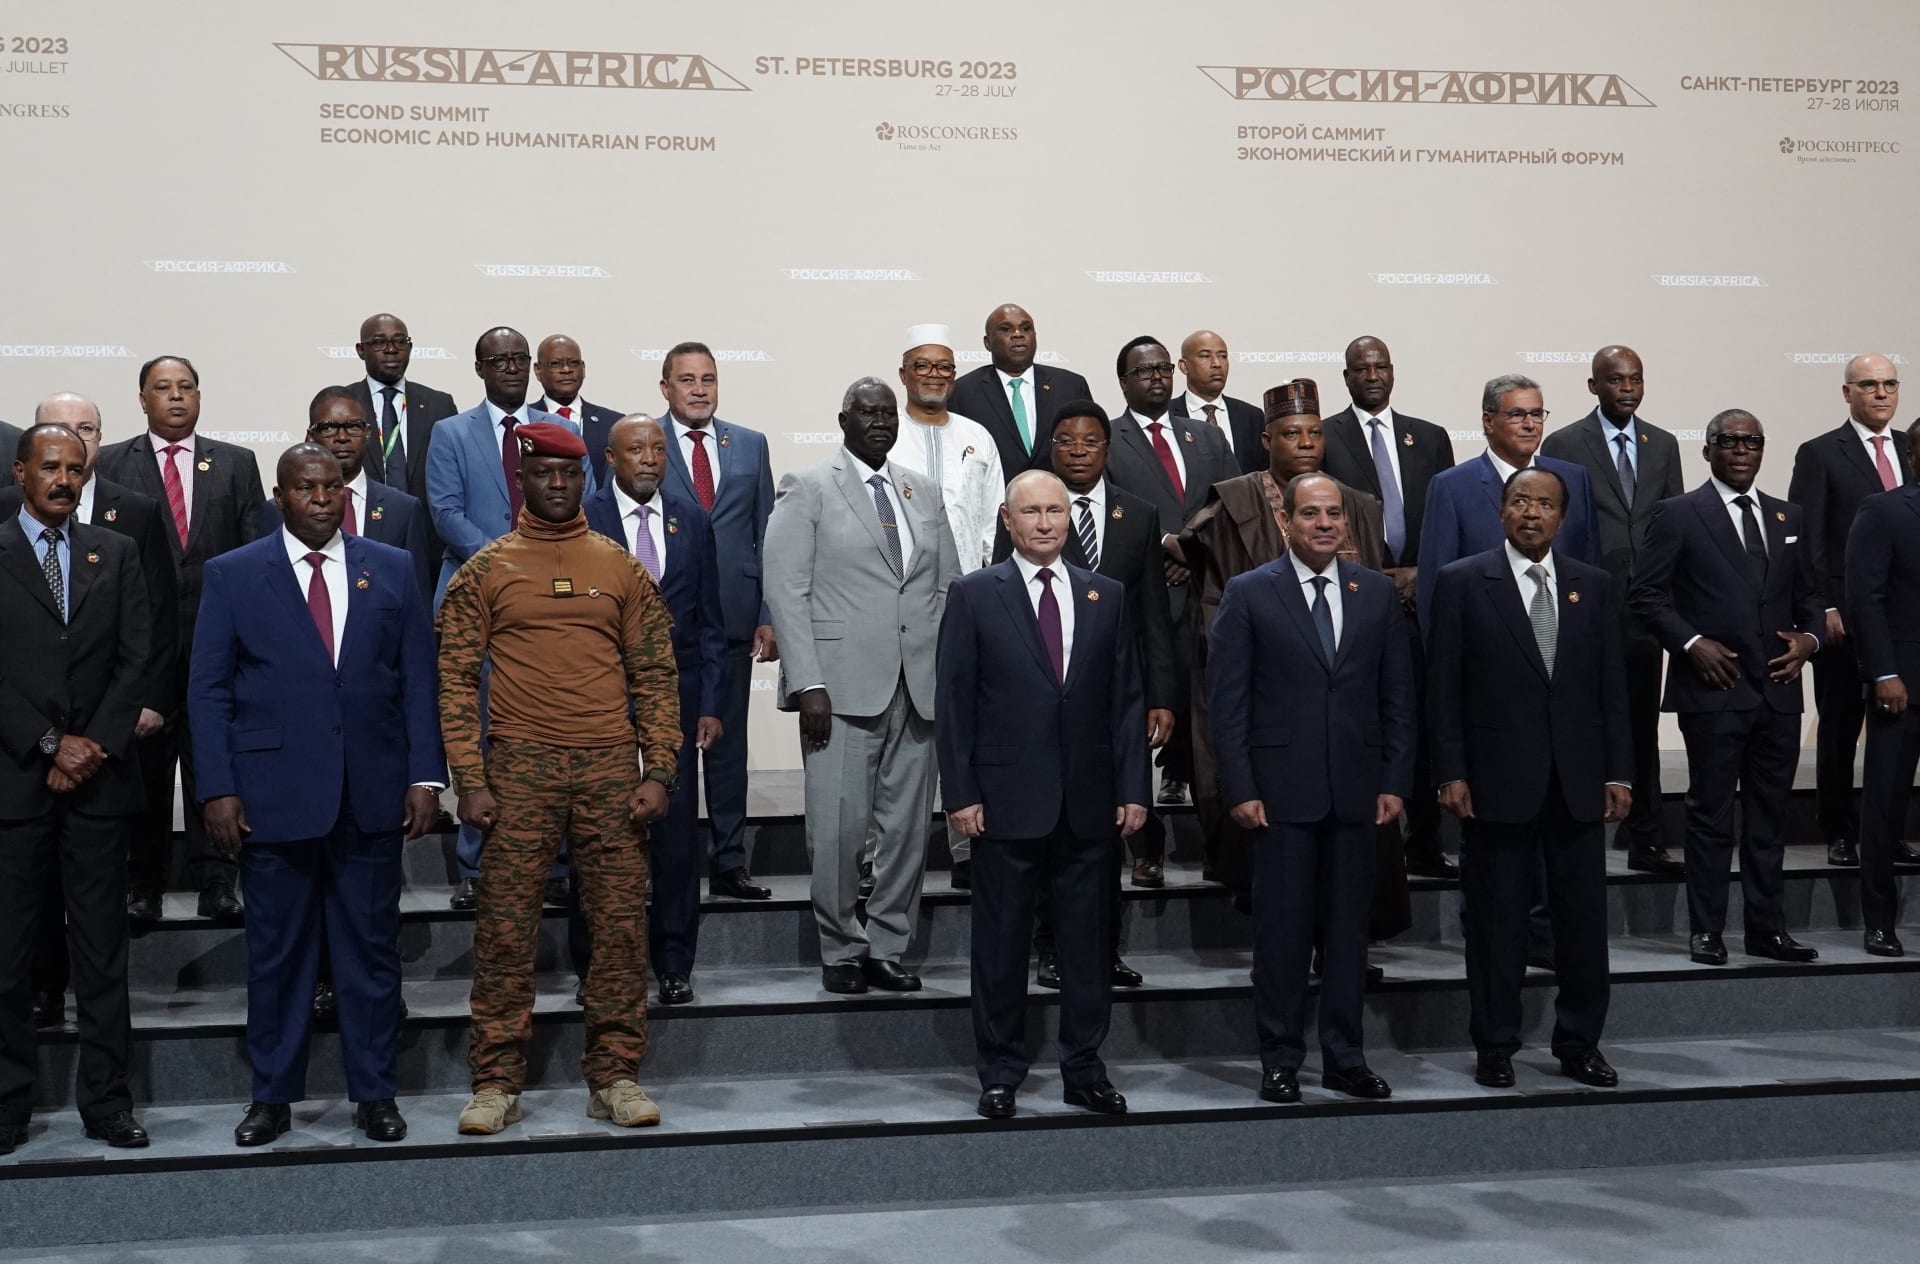 بوتين: ندرس "بعناية" اقتراح الزعماء الأفارقة للسلام بأوكرانيا.. وشطبنا 23 مليار دولار من الديون الإفريقية